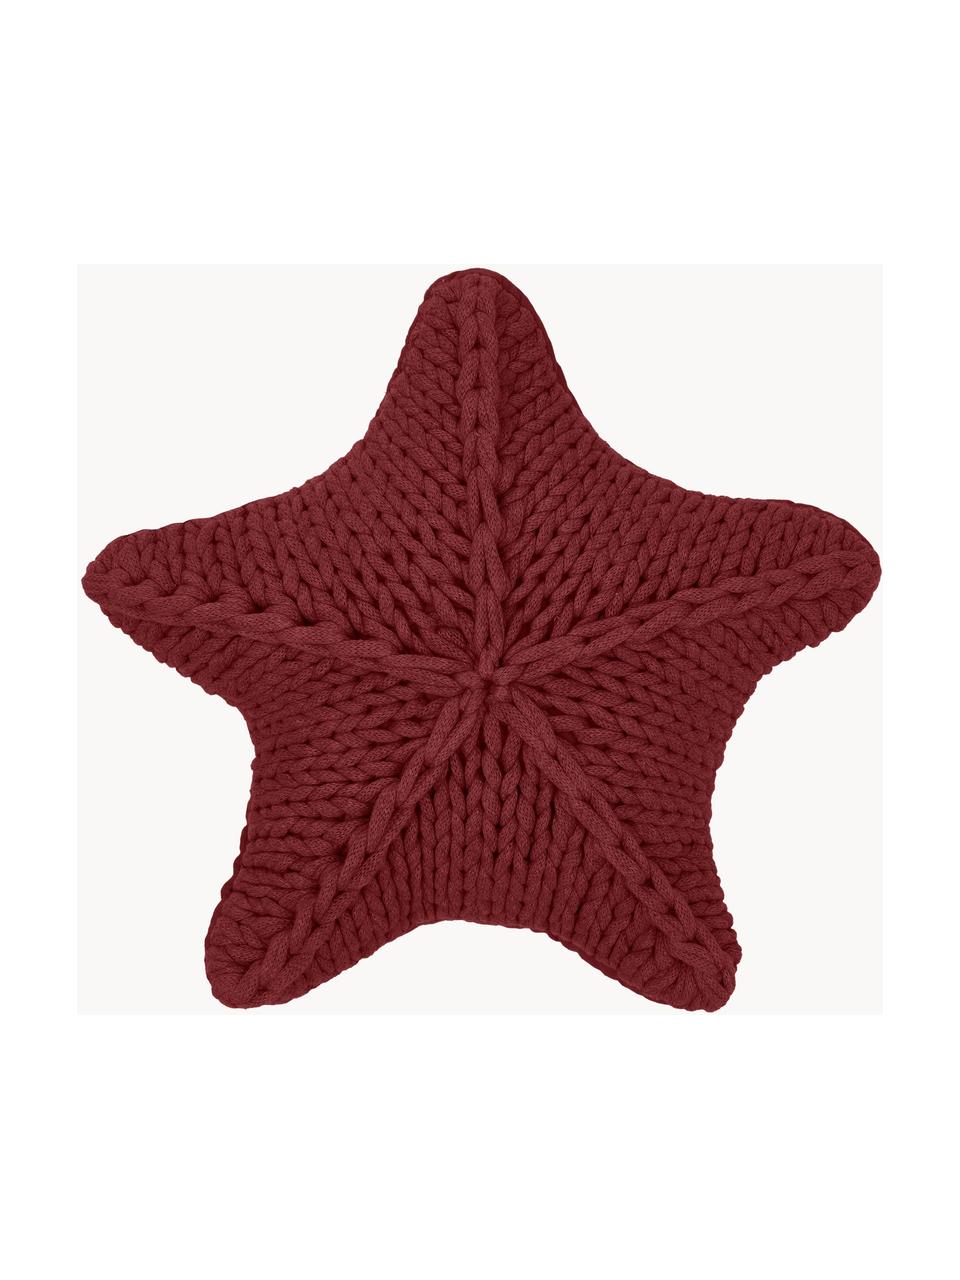 Cuscino a maglia grossa color rosso scuro Sparkle, Rivestimento: 100% cotone, Rosso scuro, Larg. 45 x Lung. 45 cm